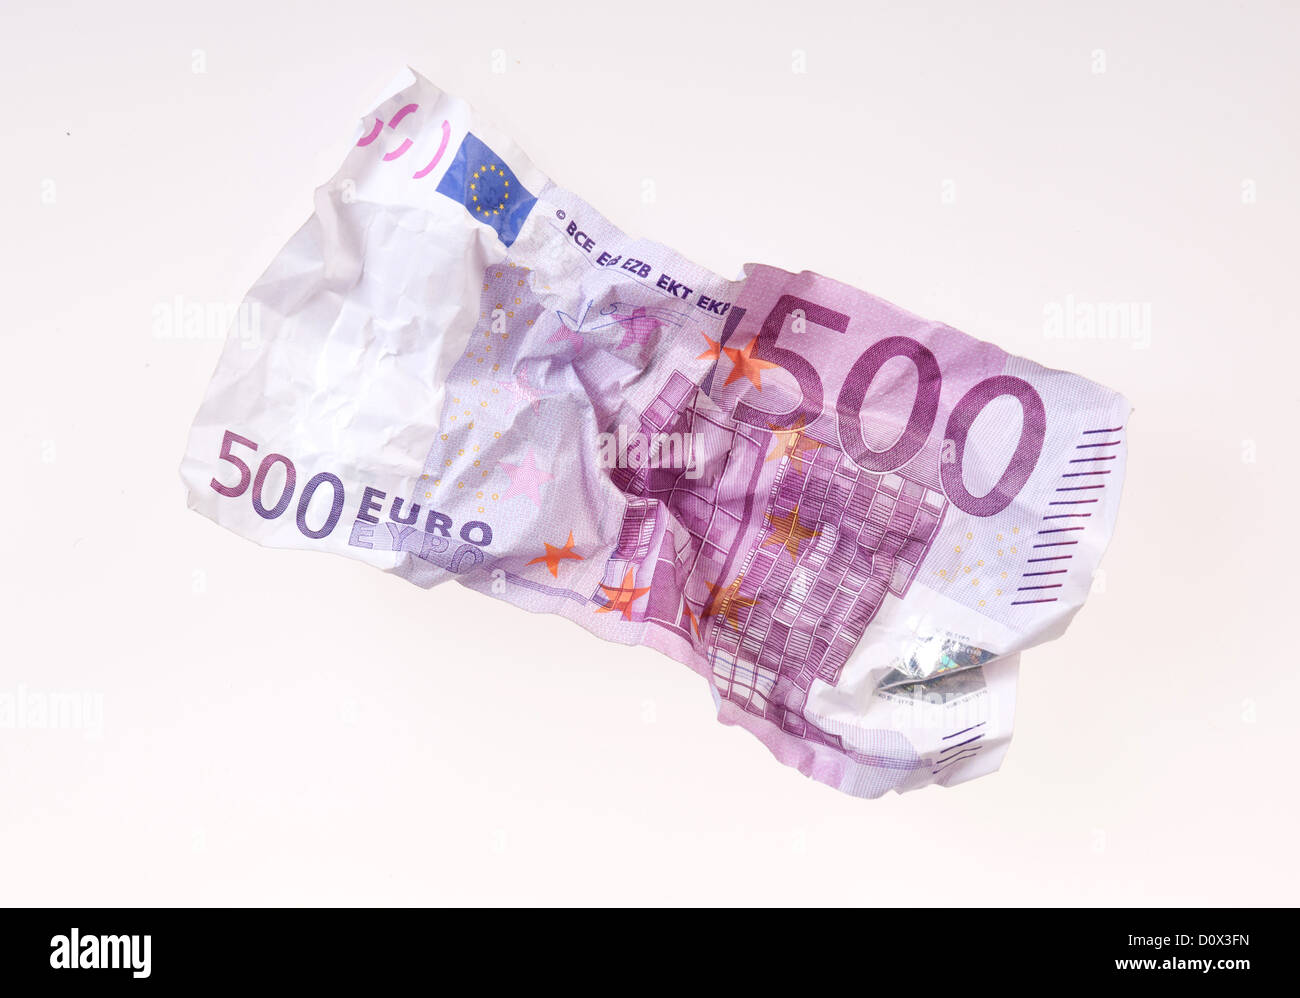 500 euro immagini e fotografie stock ad alta risoluzione - Alamy